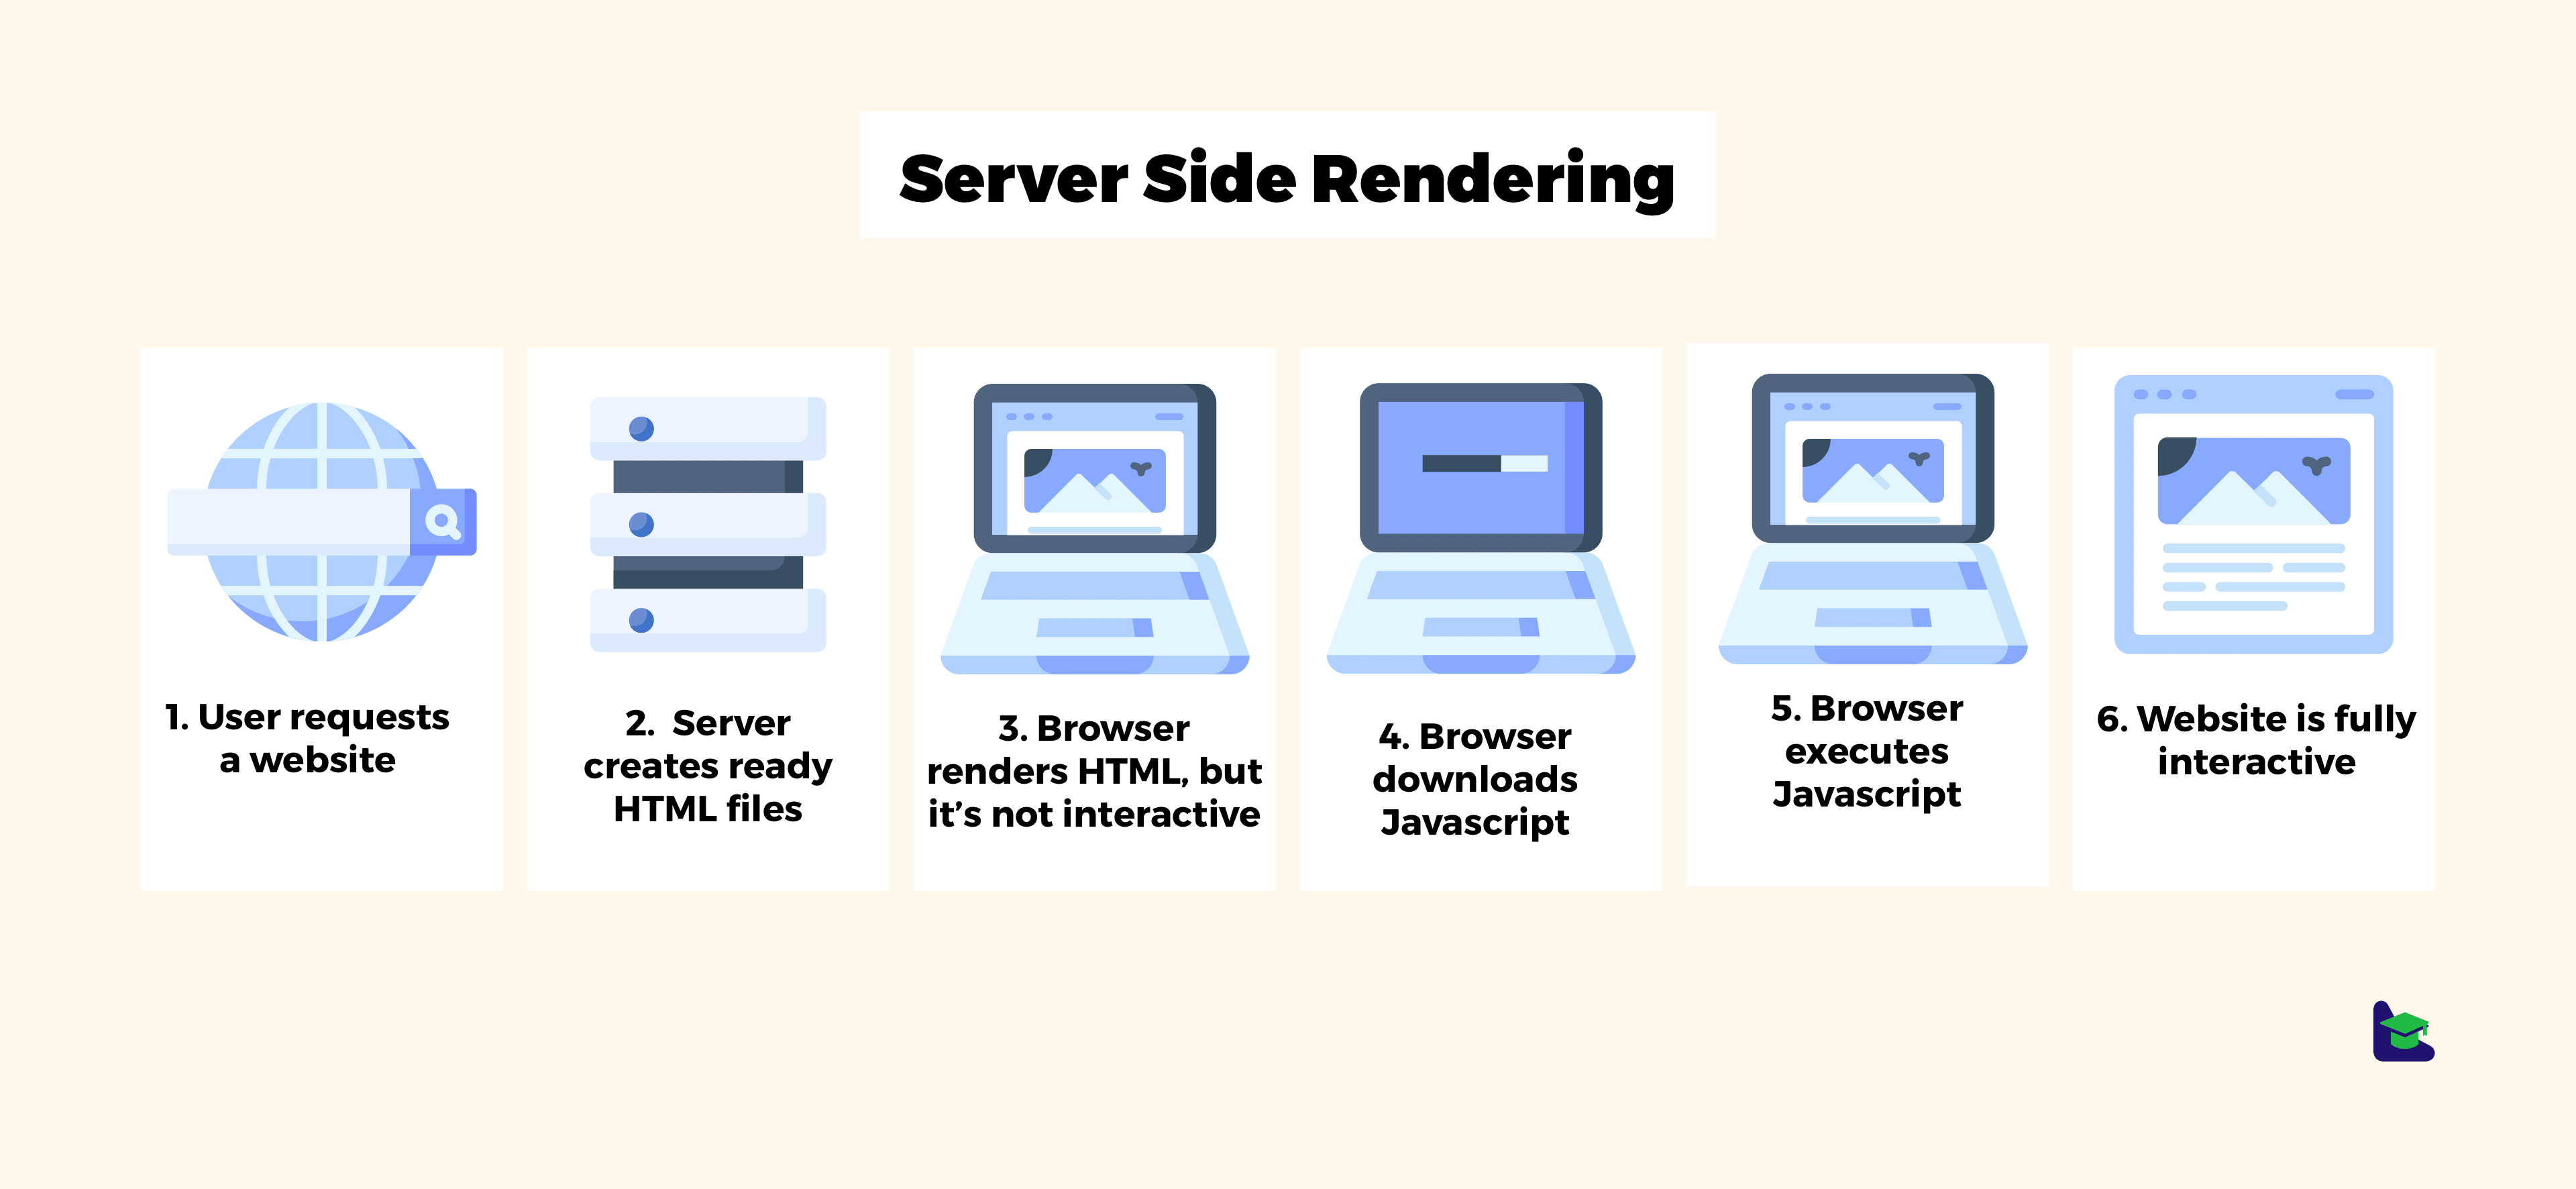 Schemat przedstawiający kroki procesu renderowania strony internetowej po stronie serwera